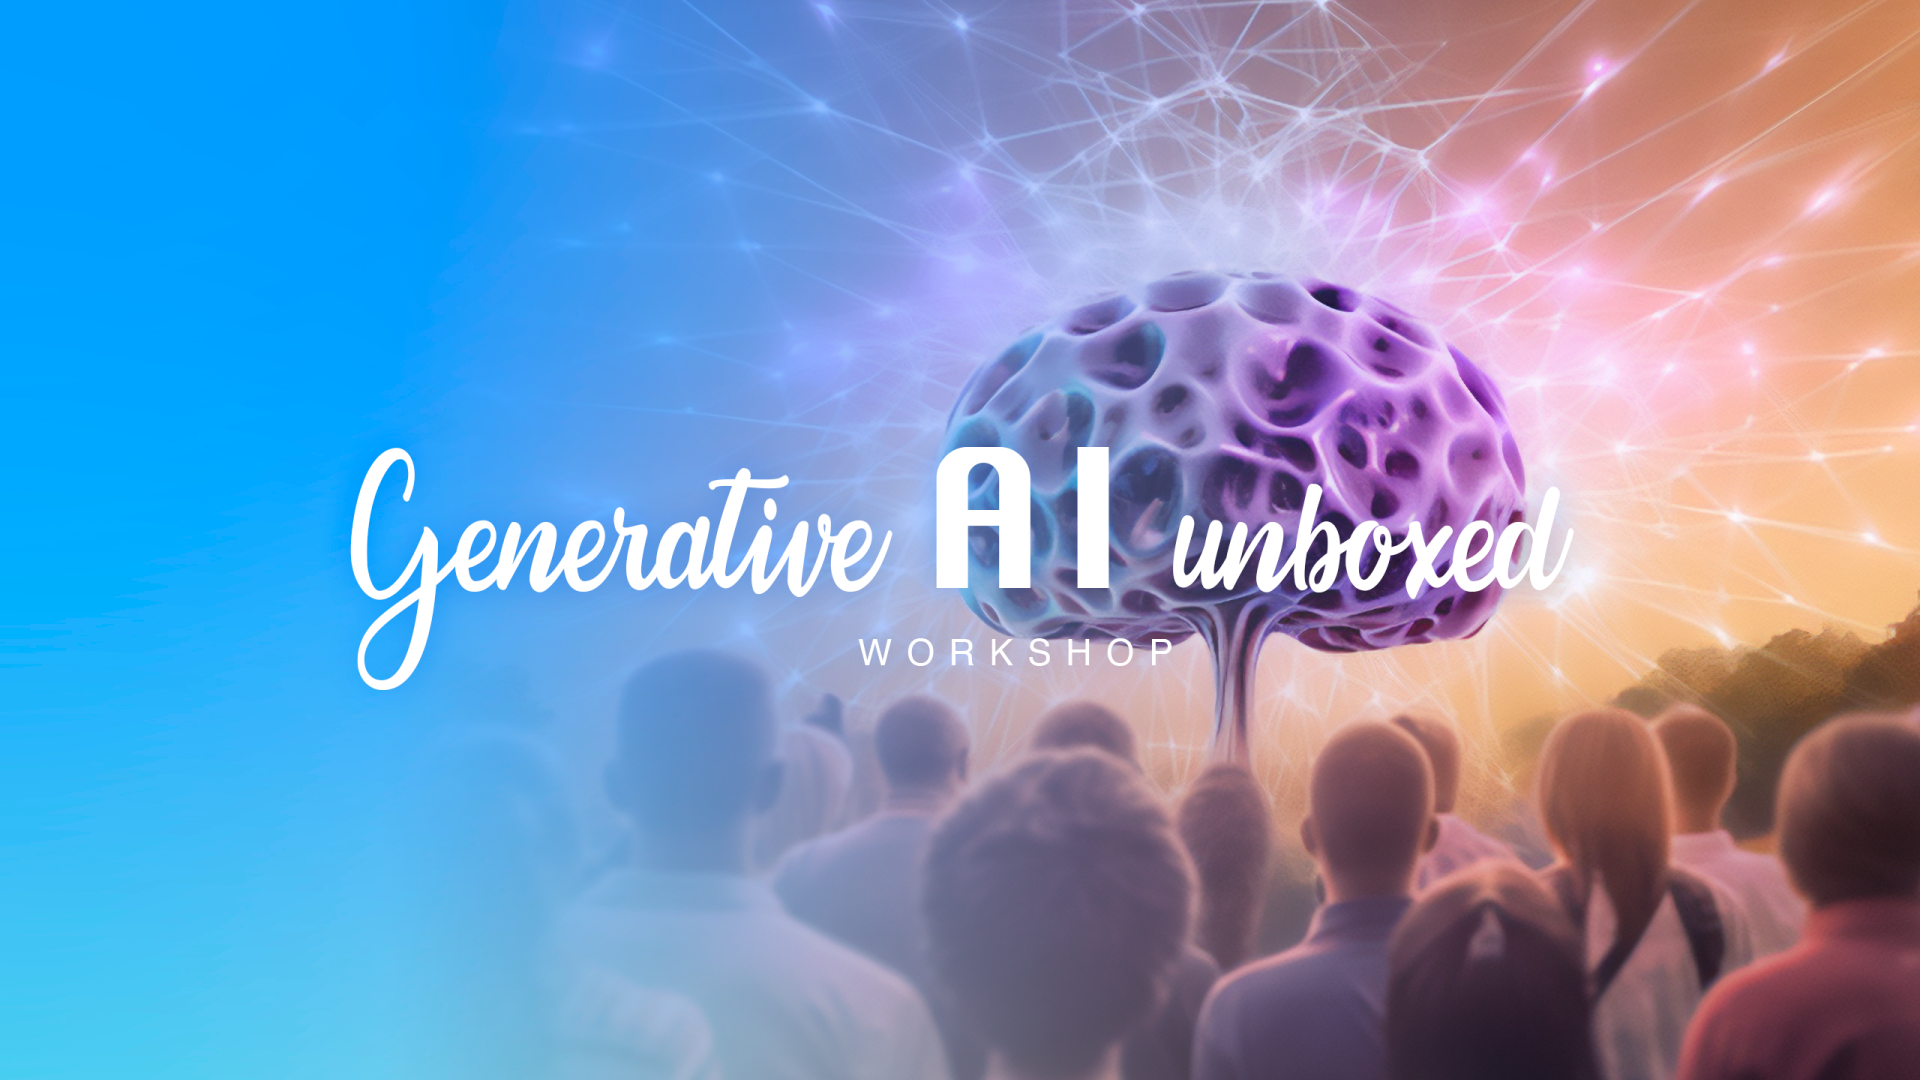 Generative AI Unboxed Workshop